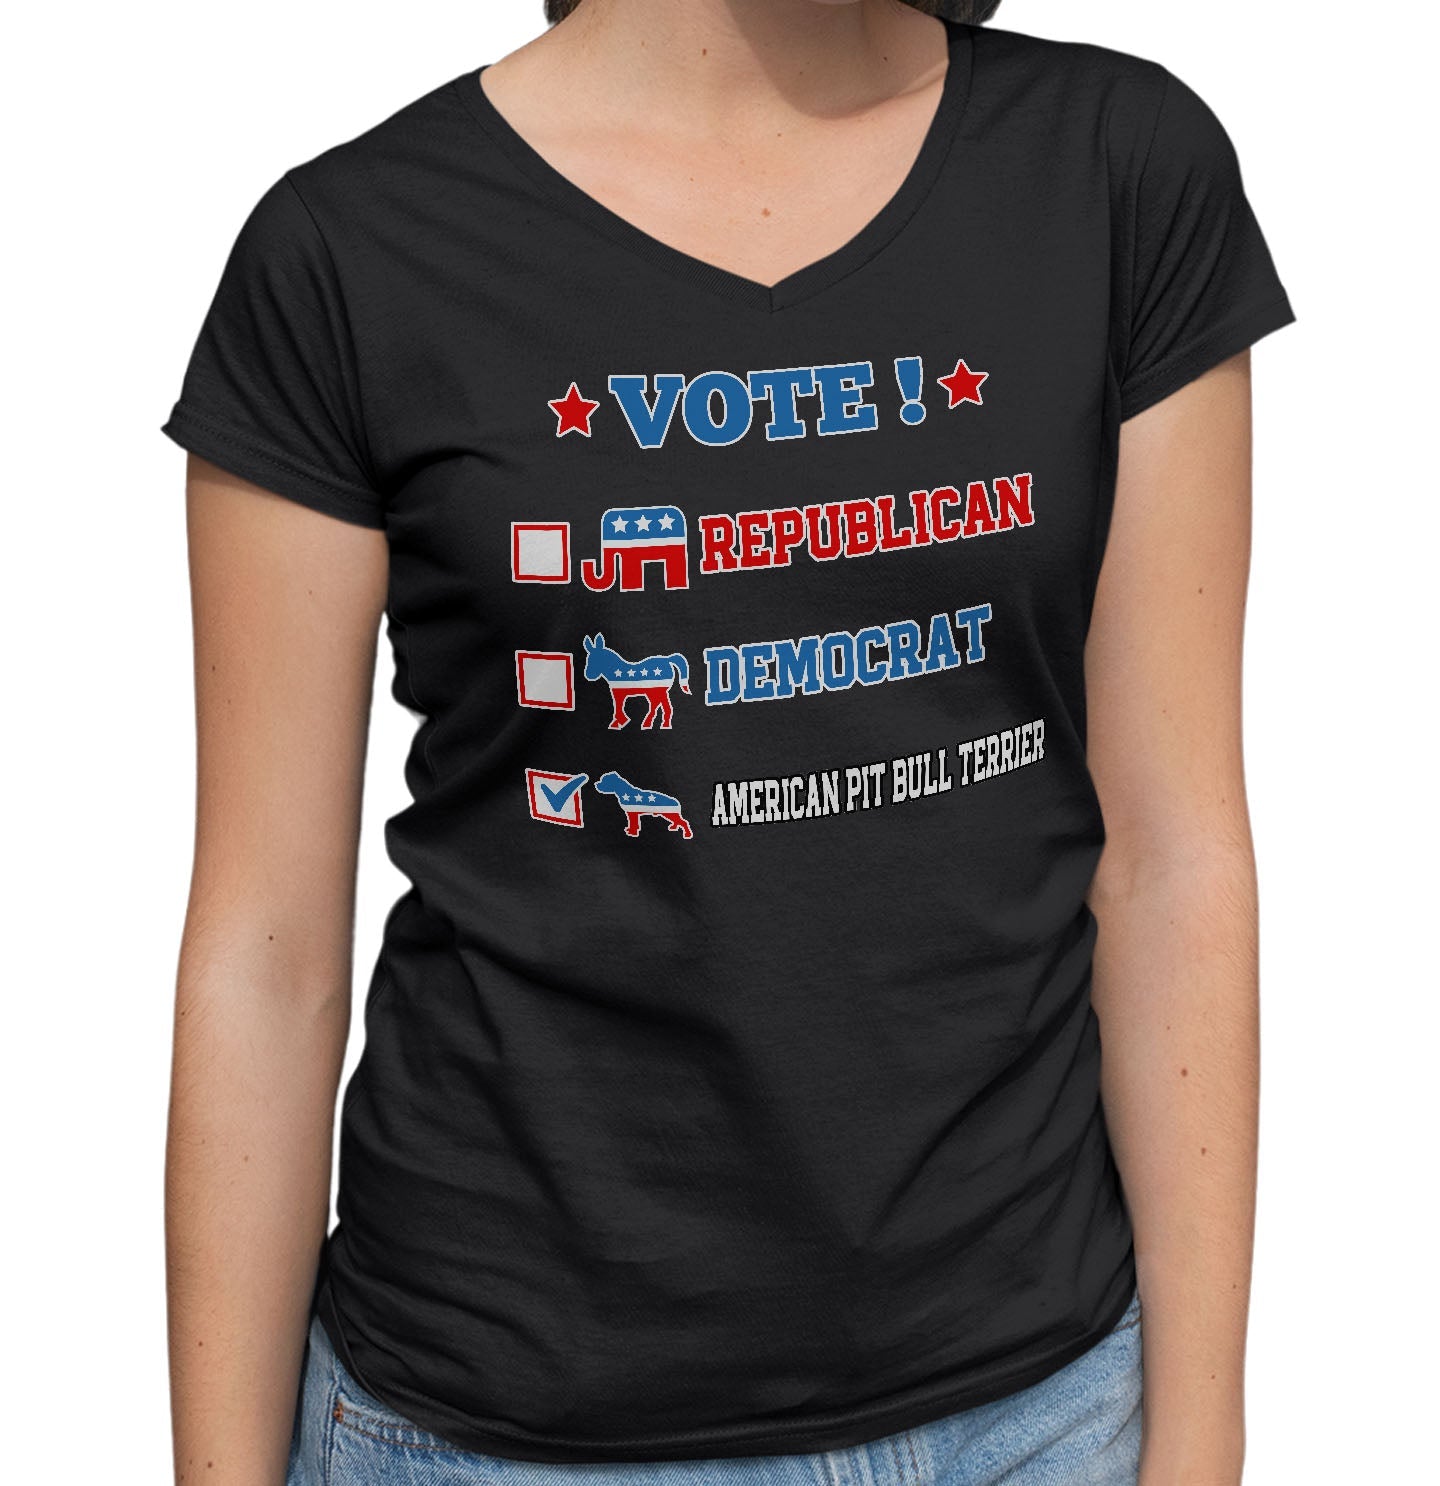 Vote for the American Pit Bull Terrier - Women's V-Neck T-Shirt